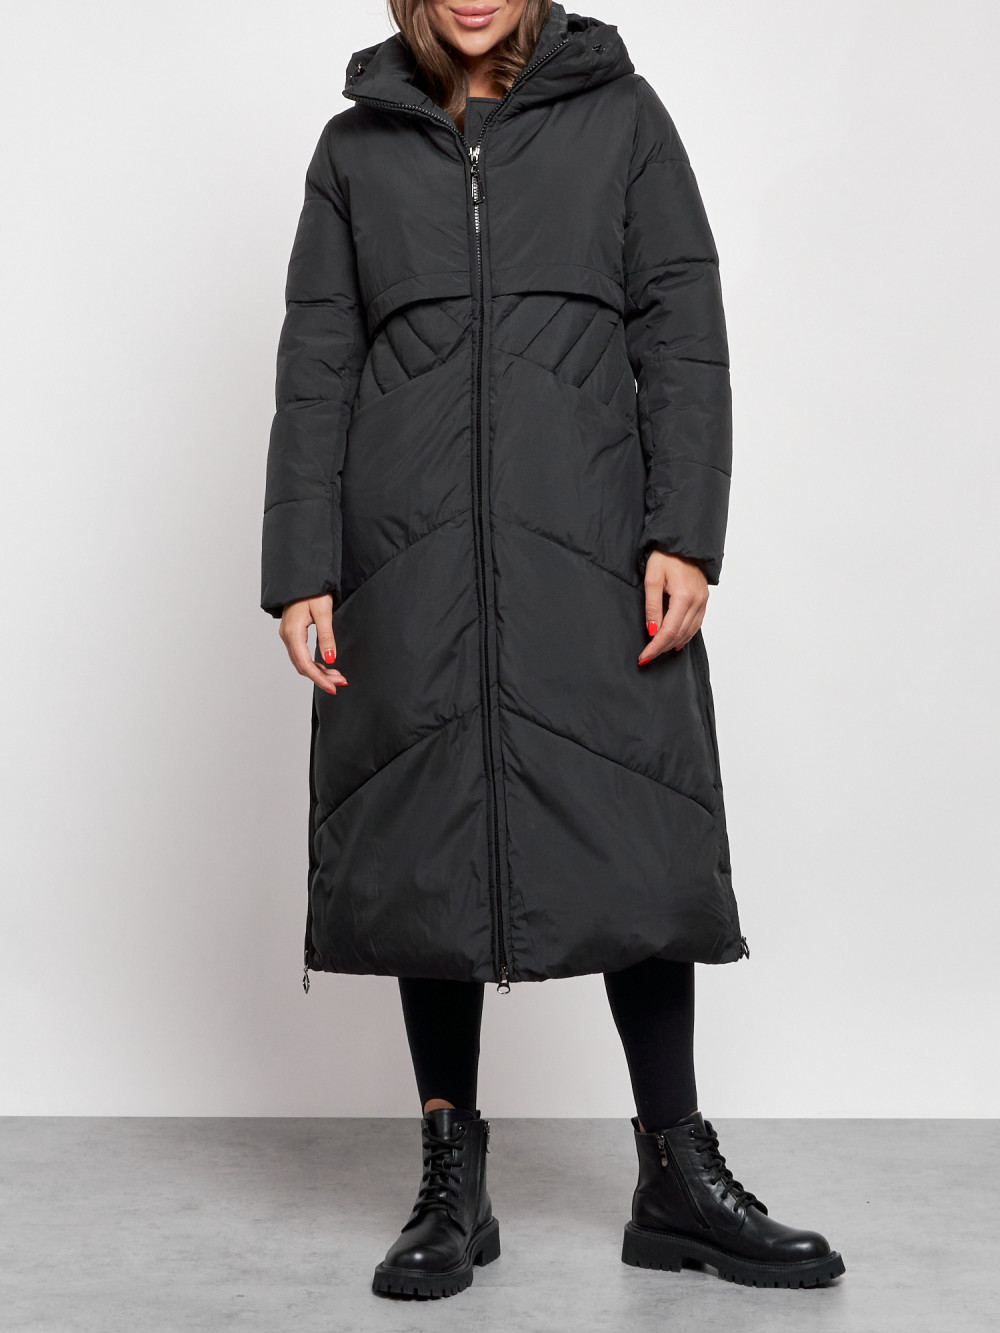 Пальто женское NoBrand AD52356 черное L